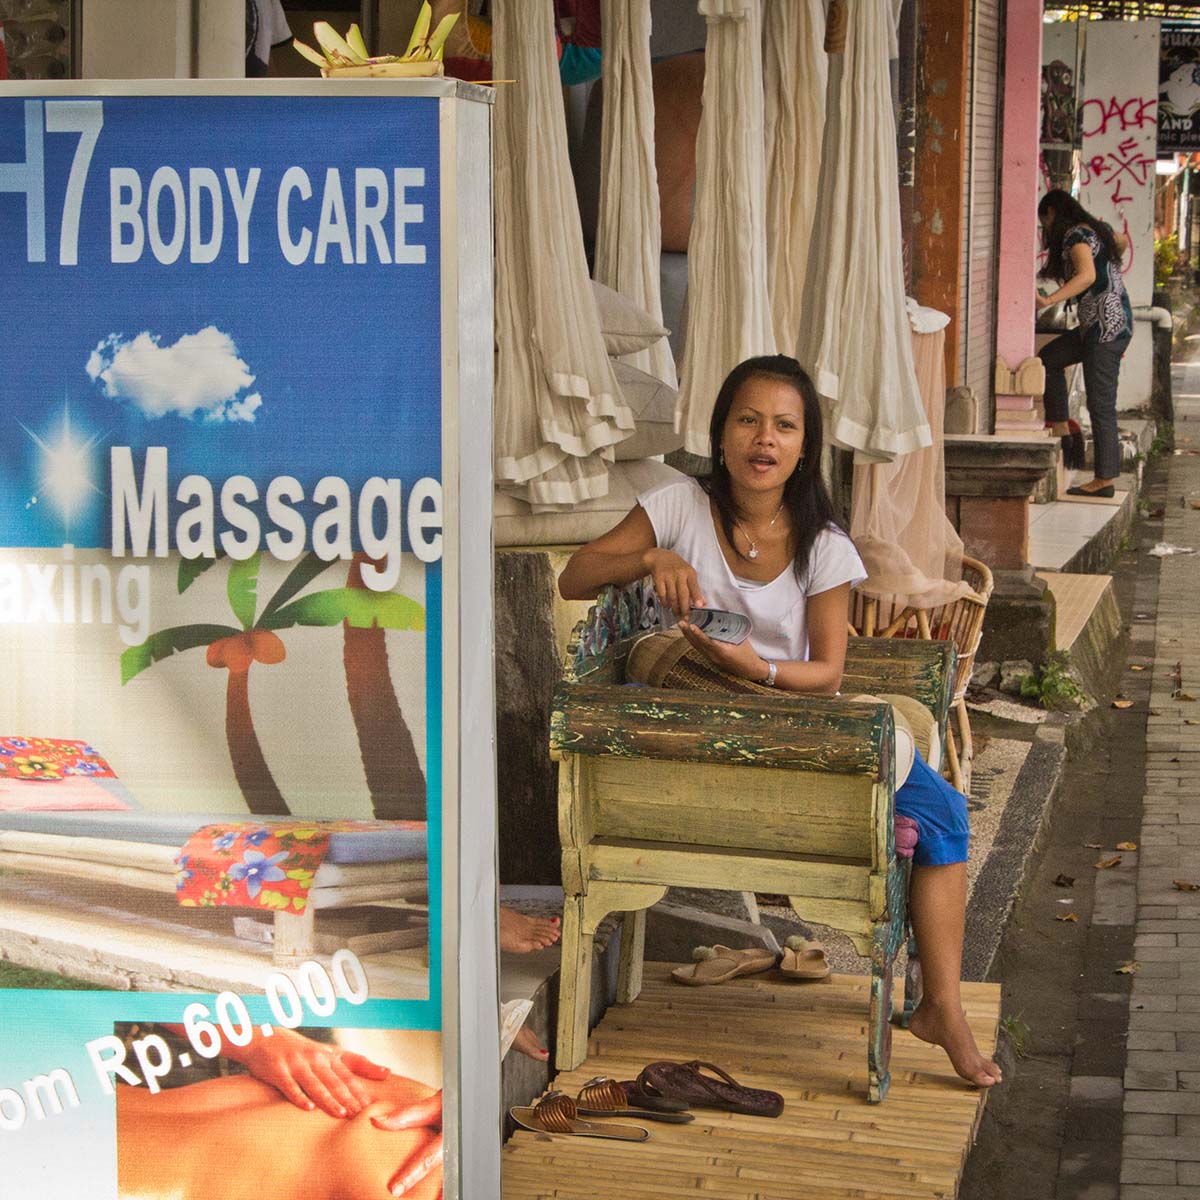 Penis massage in Bali An awkward massage moment